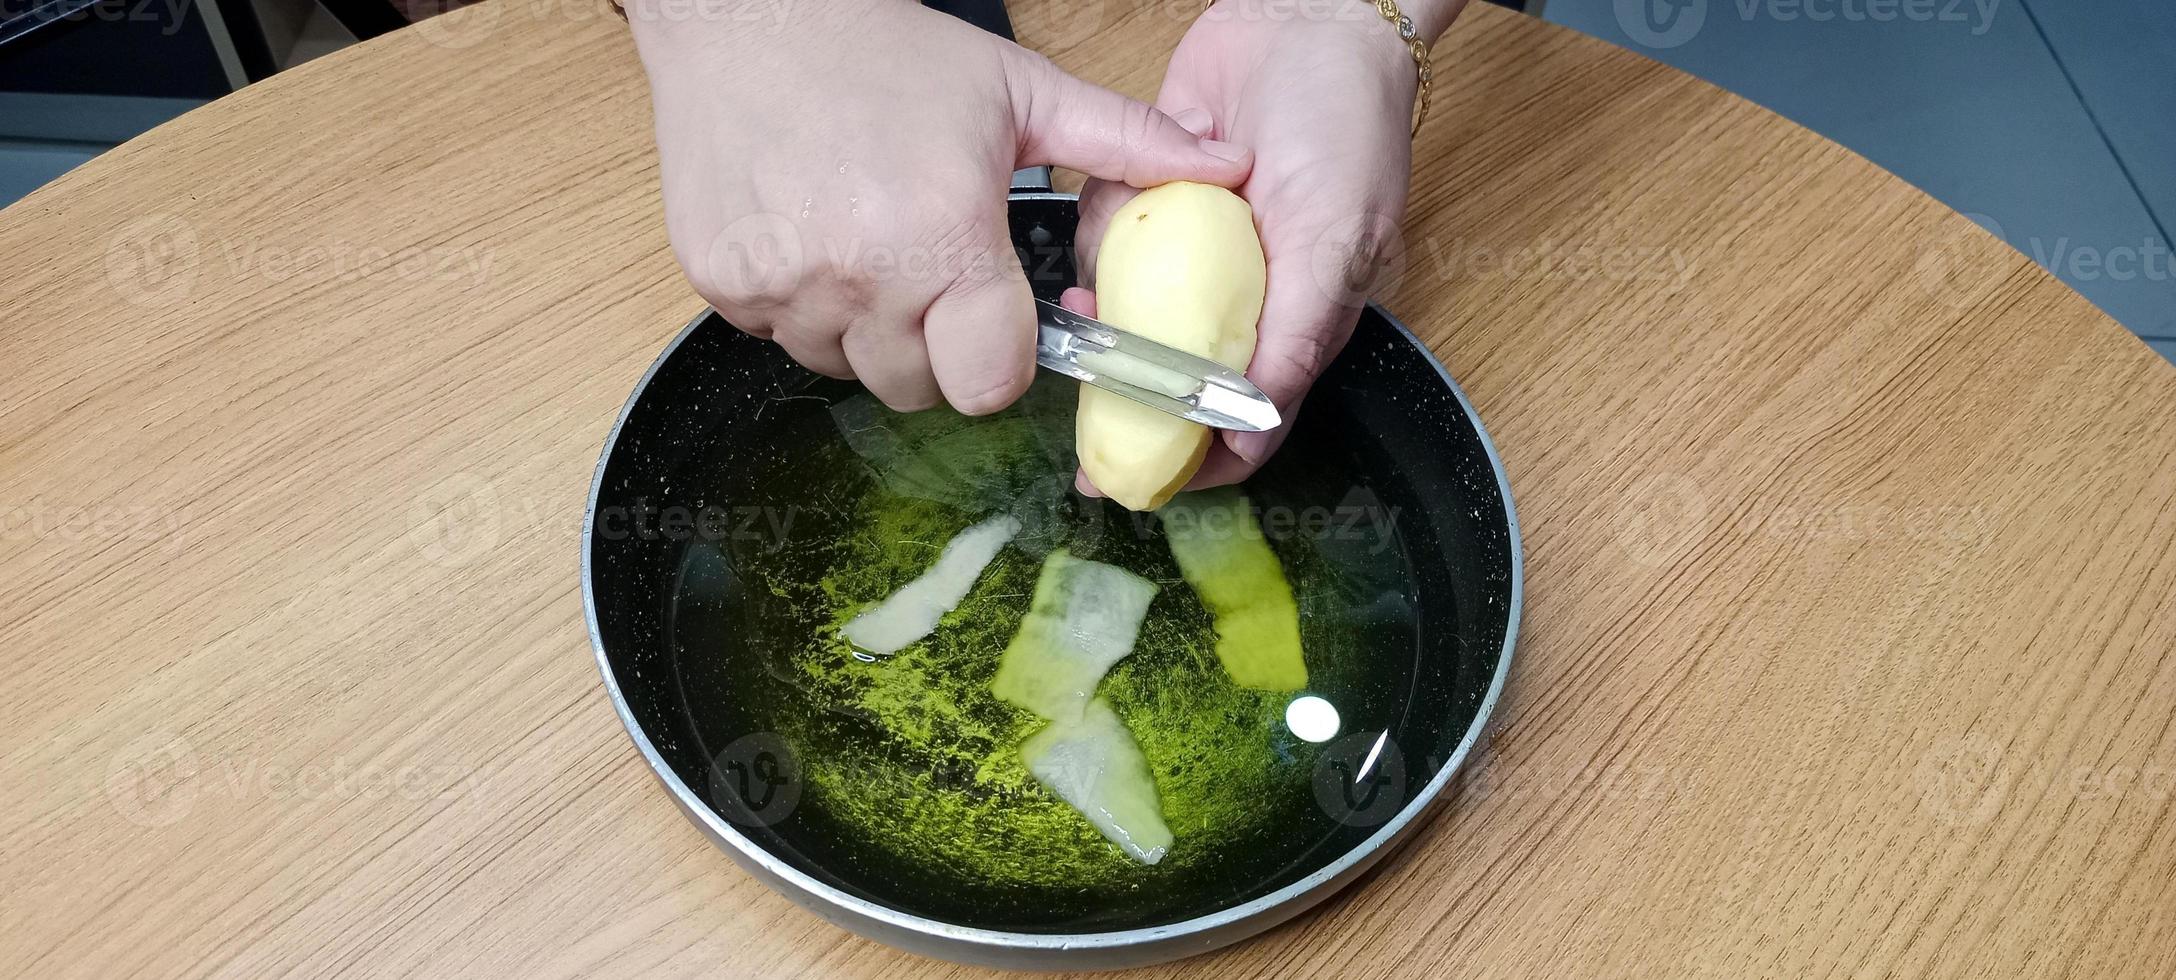 aardappel schillen in olie voor maken werkwijze van aardappel chips, aal chips foto